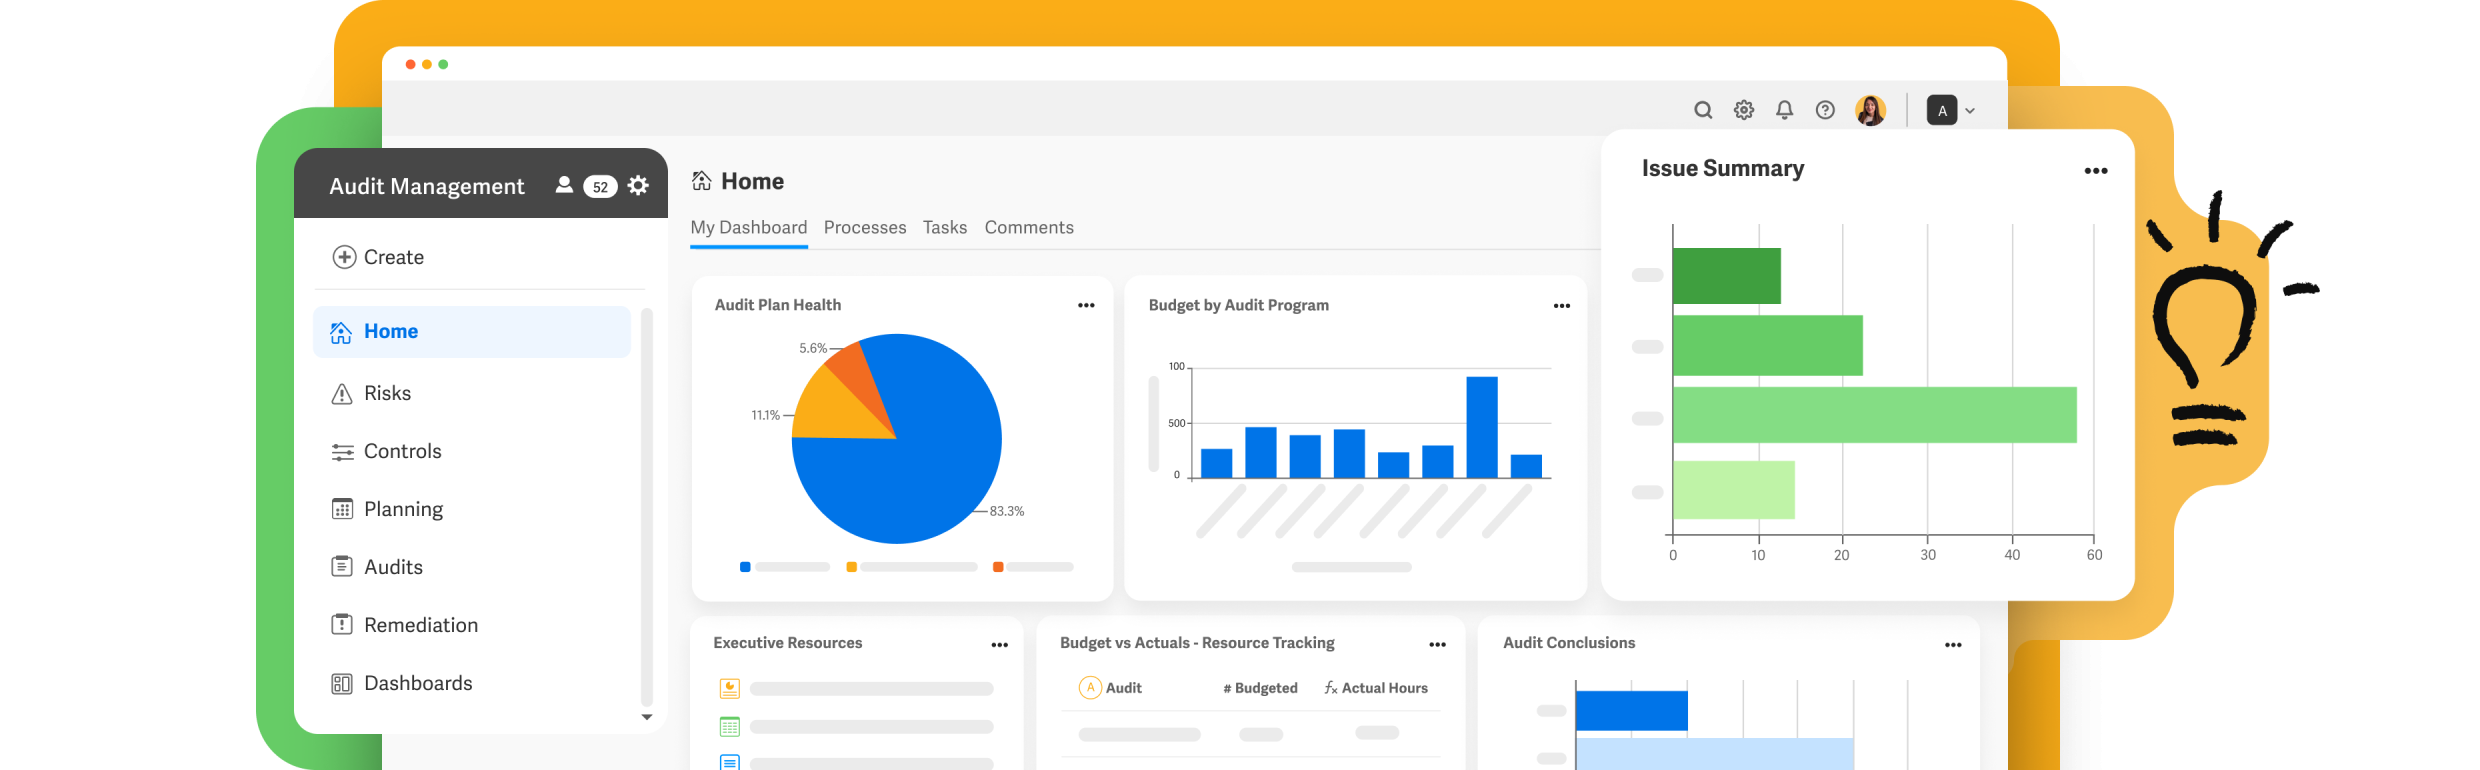 Workiva Internal Audit Management Platform Graphic